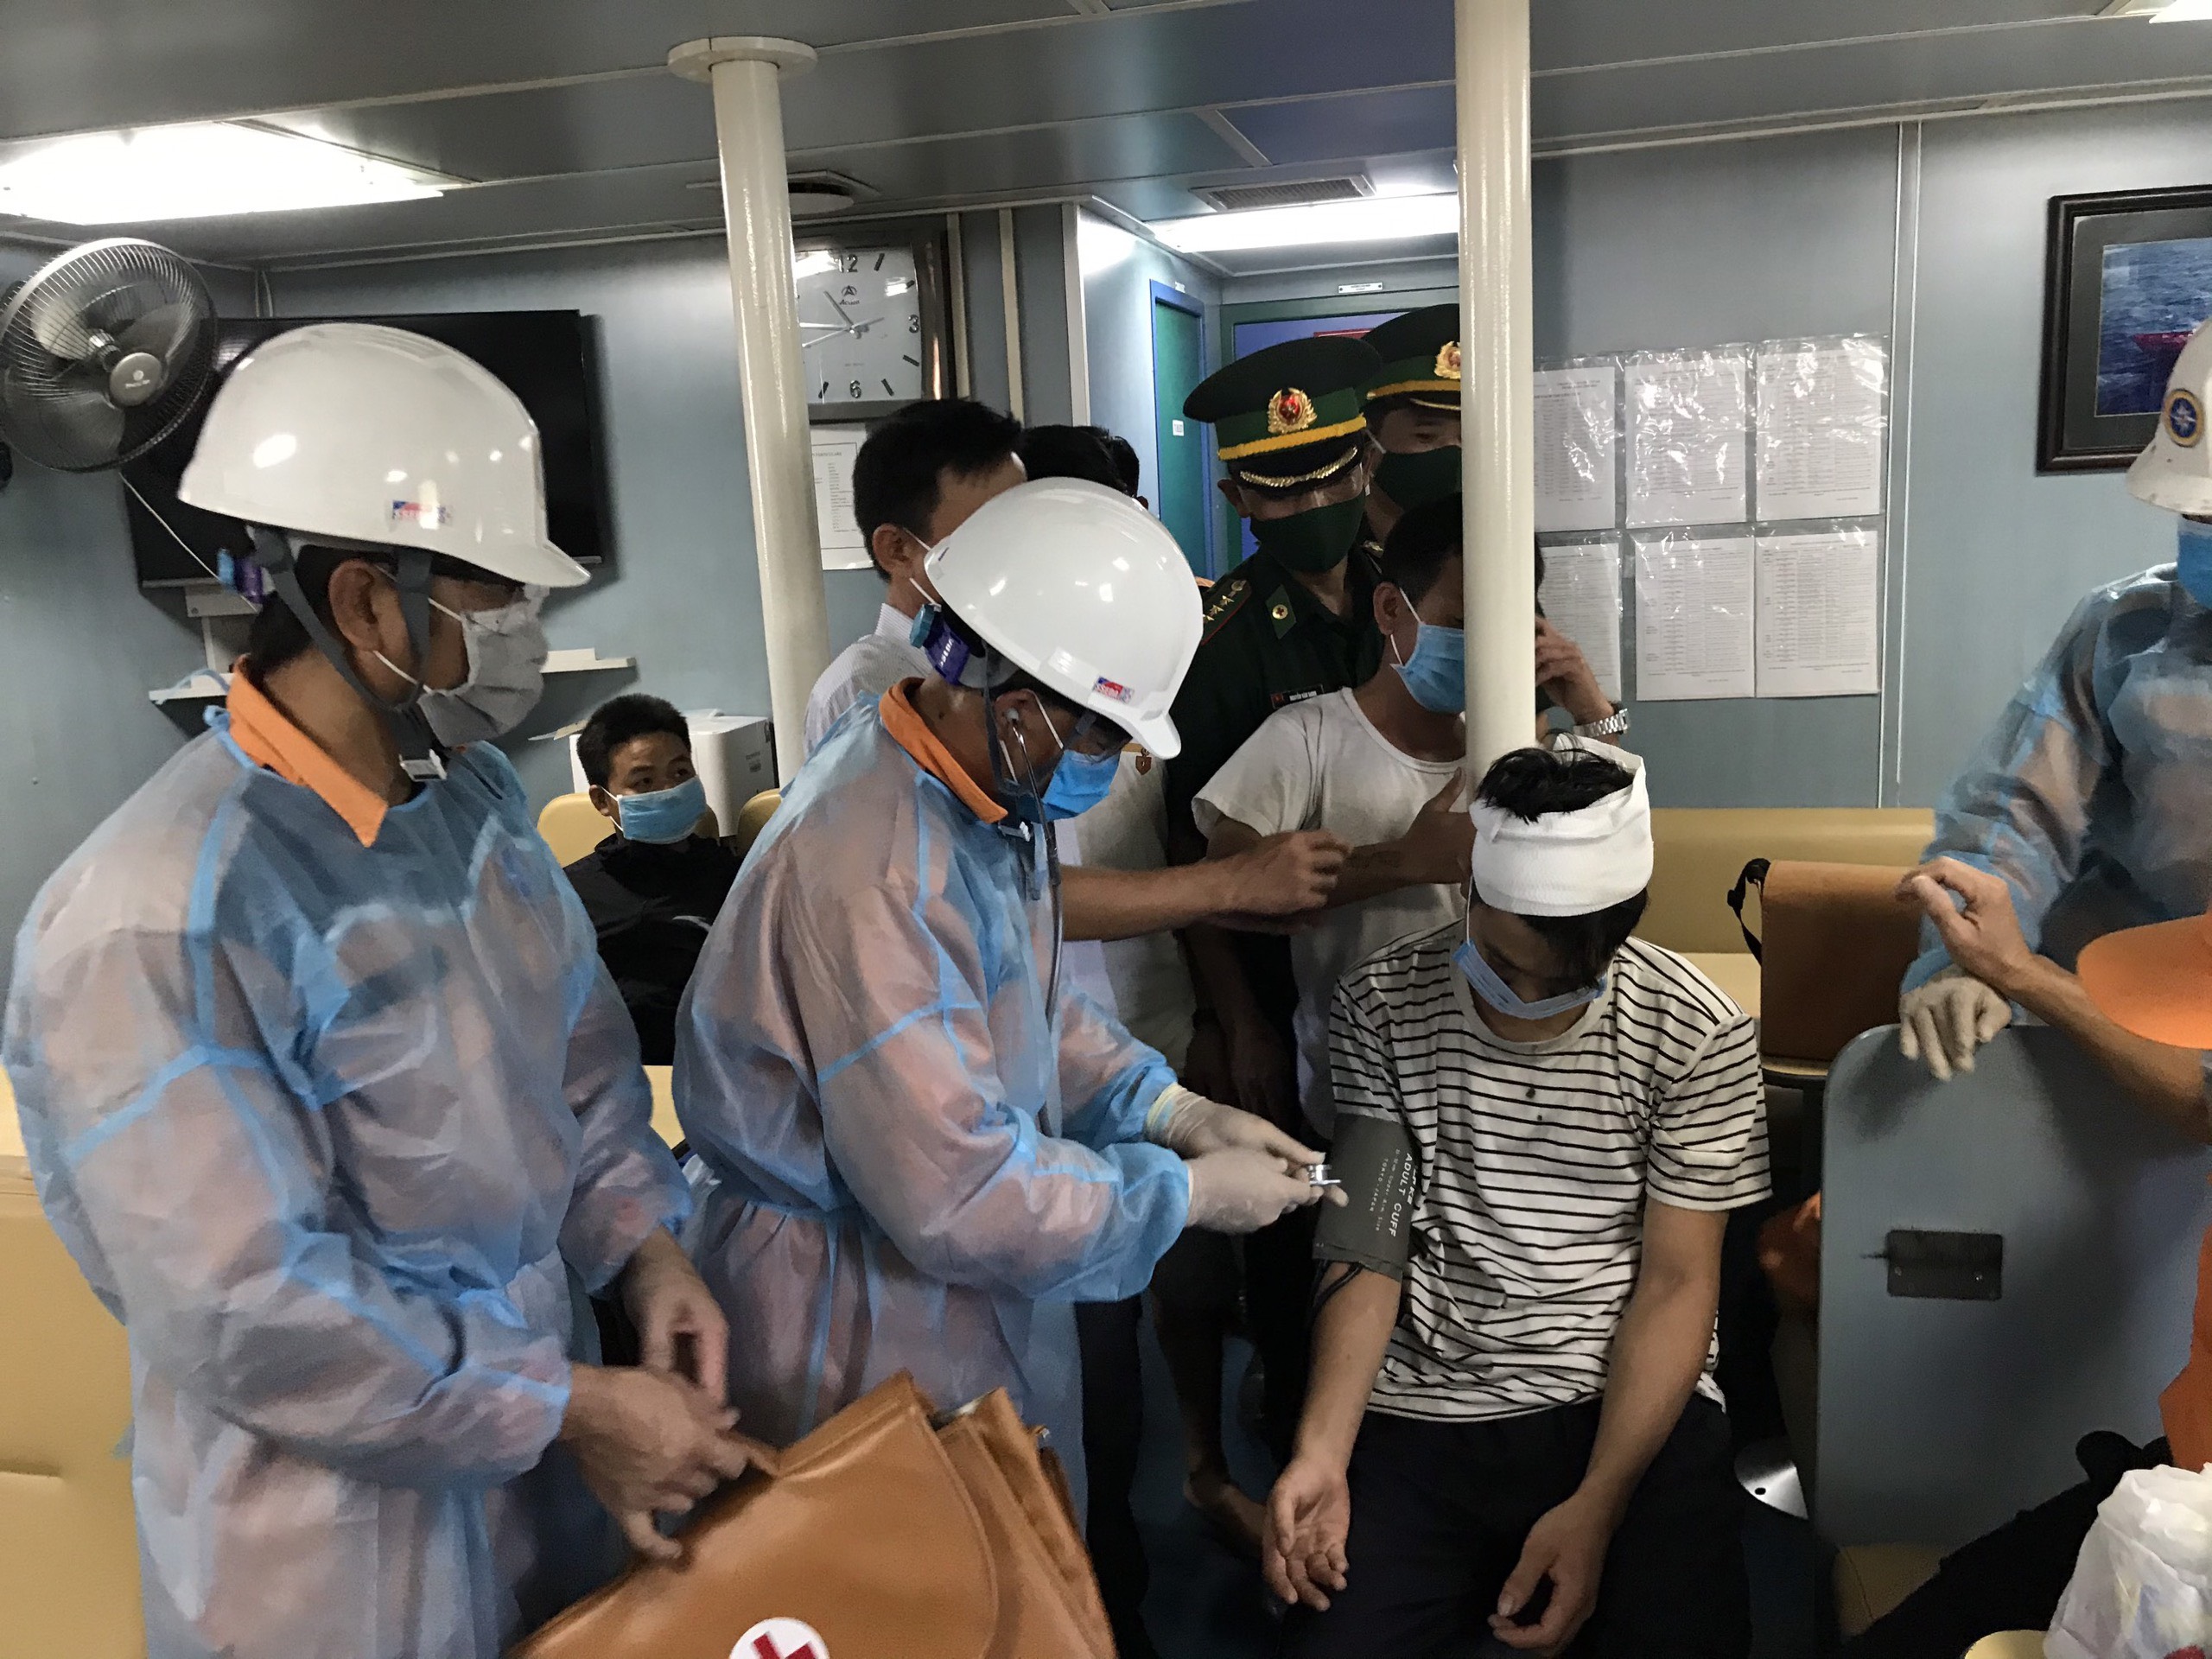 Tàu SAR 411 đã tiếp nhận thuyền viên bị nạn sang tàu và tiến hành chăm sóc y tế, sơ cứu ban đầu cho nạn nhân